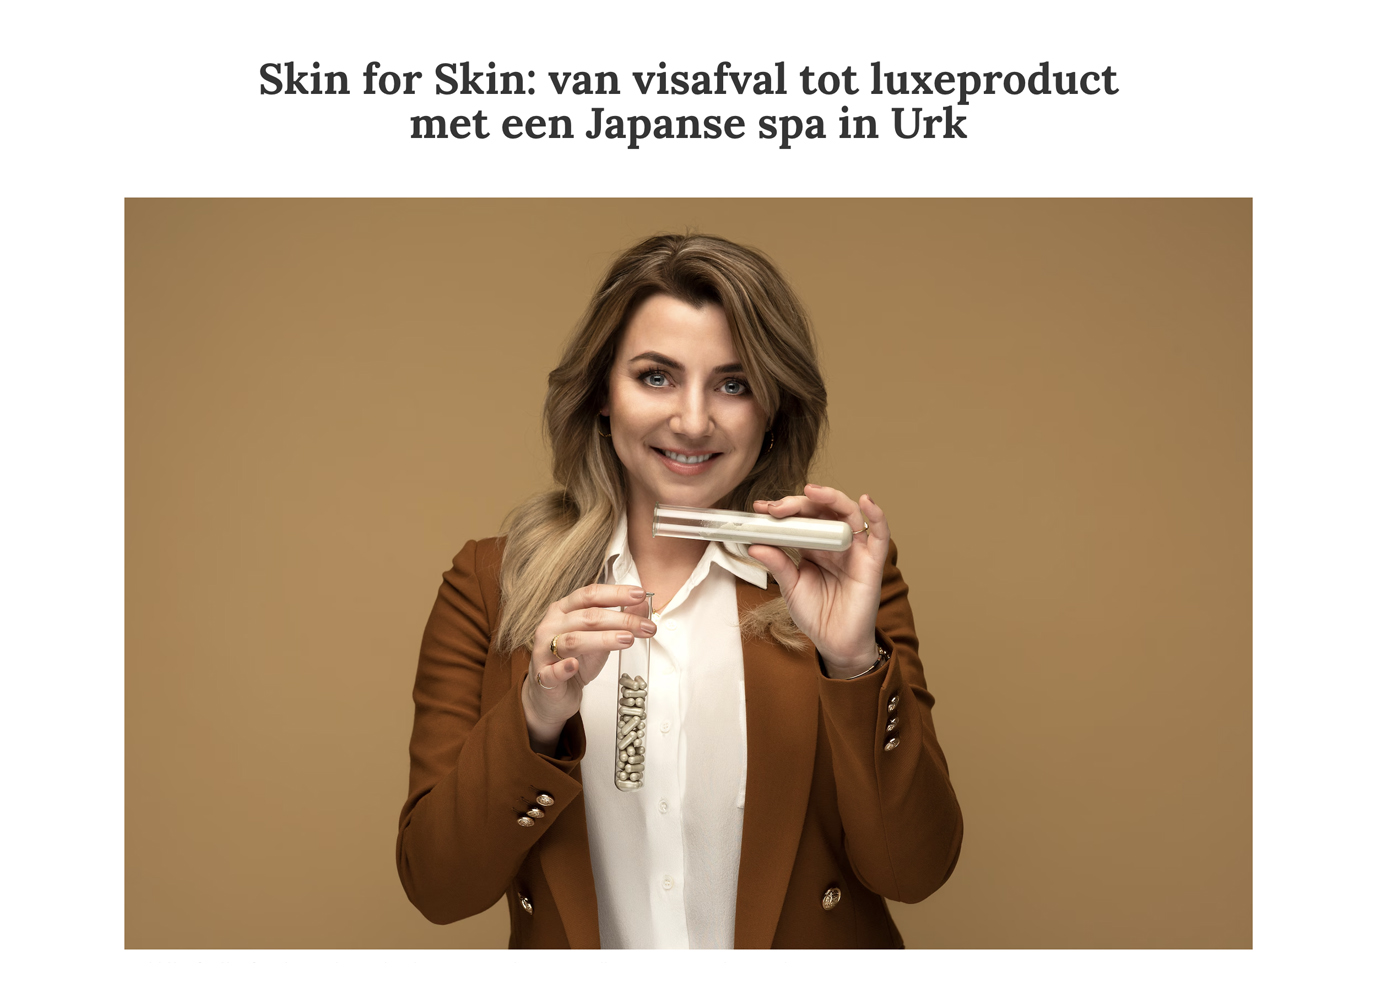 Skin for Skin: van visafval tot luxeproduct met een Japanse spa in Urk